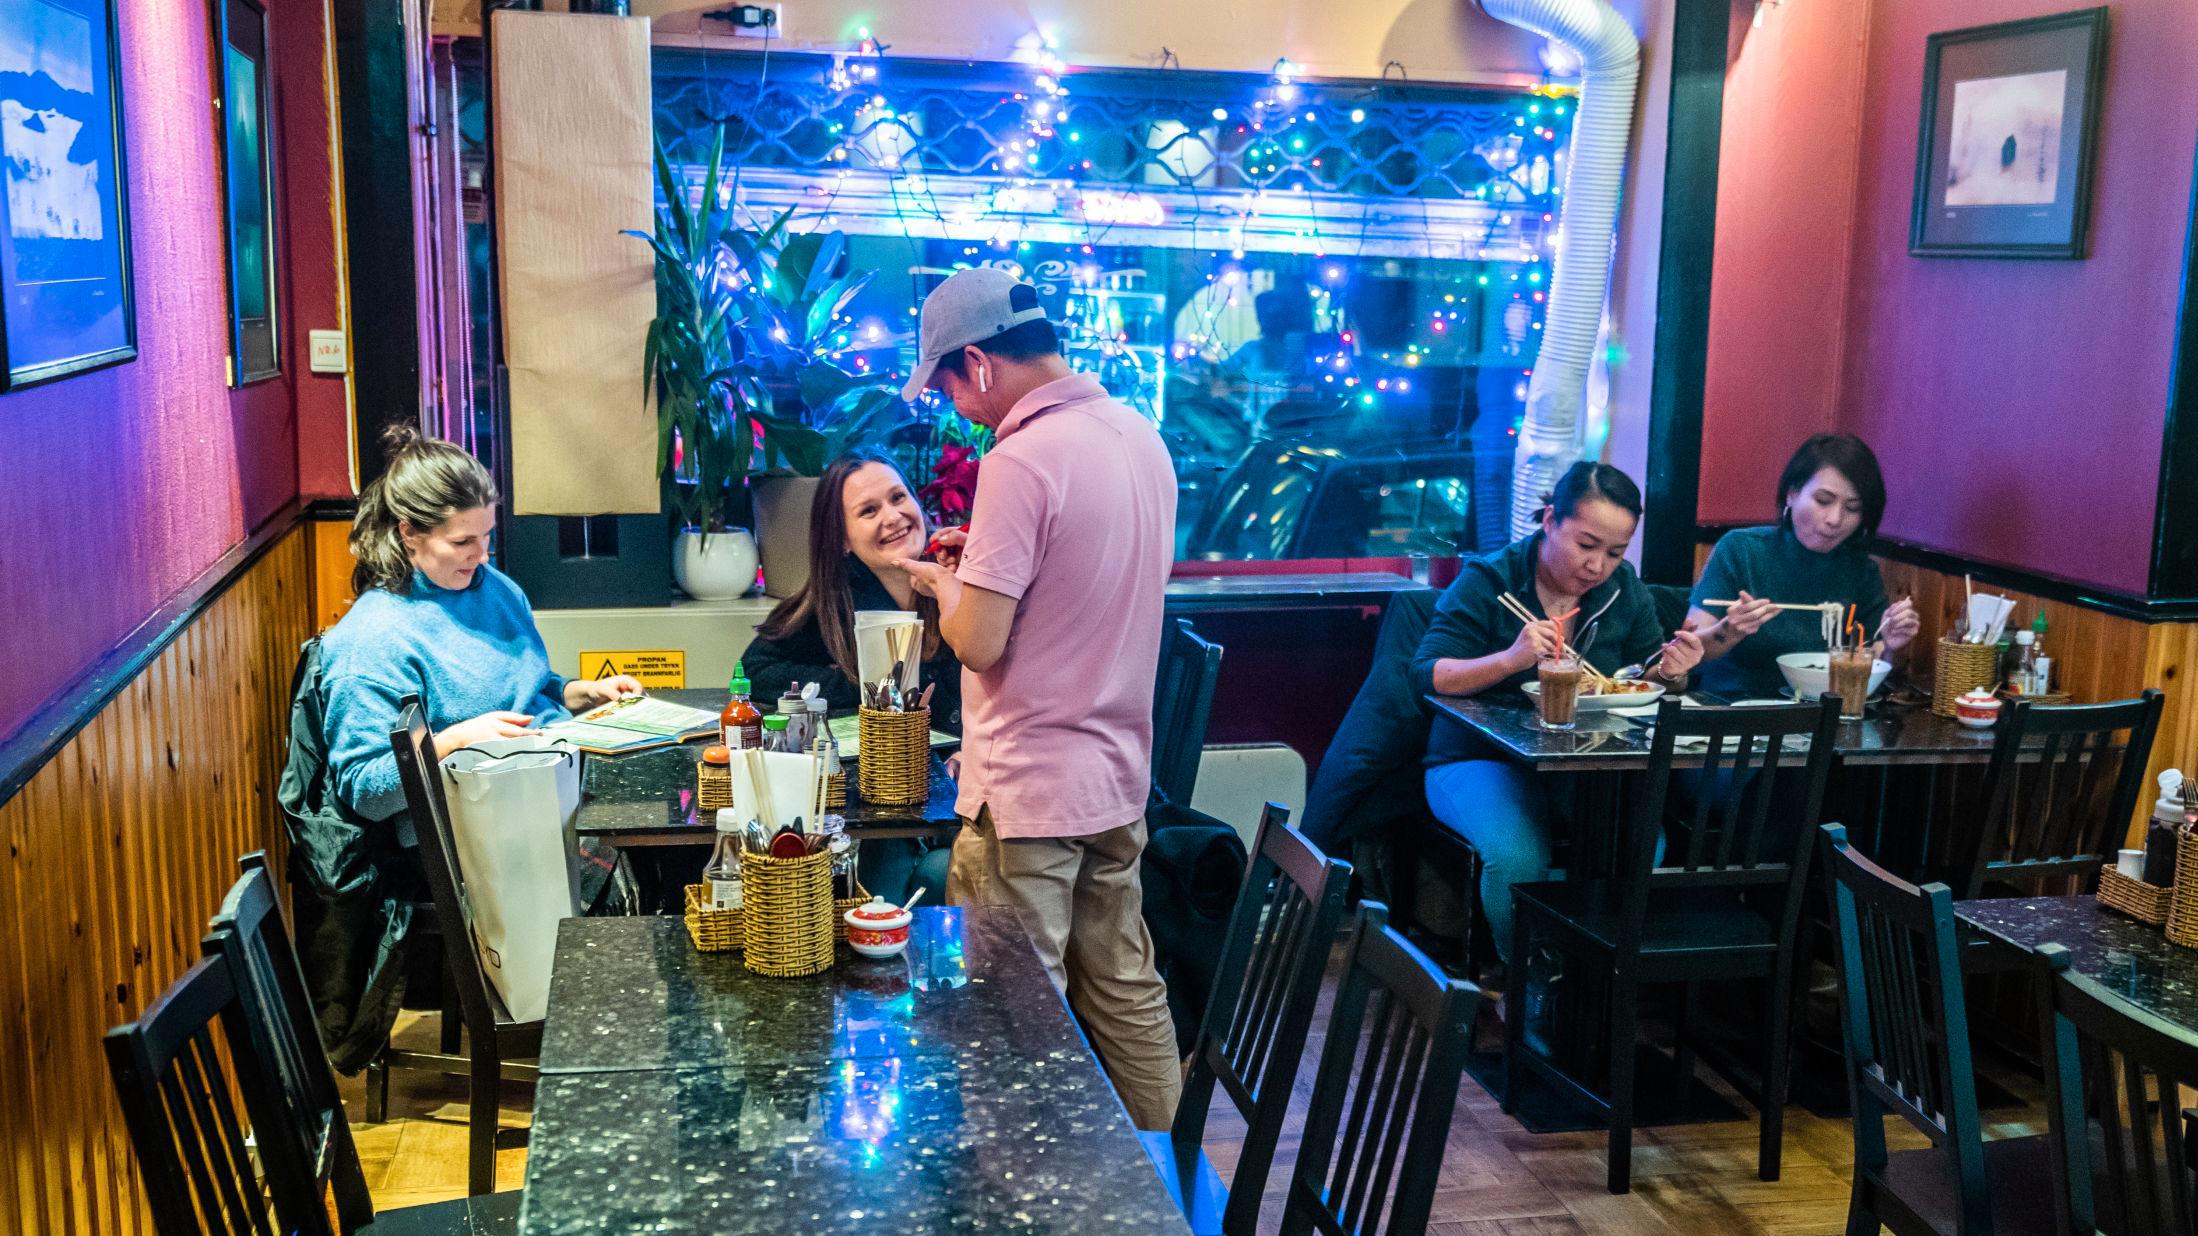 HOLDER KOKEN: Den vietnamesiske restauranten i Torggata byr på en av byens beste supper, mener VGs anmelder. Foto: Frode Hansen/VG